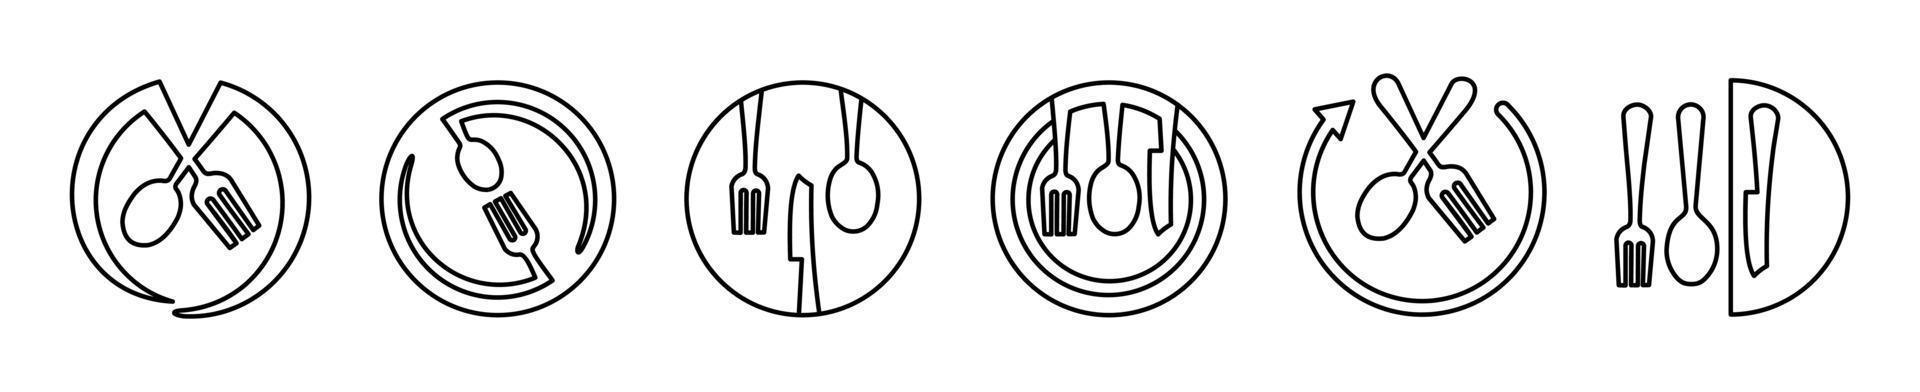 servis vektor illustration sked, gaffel, kniv och tallrik ikonuppsättning i linje stil, middagsservering samling